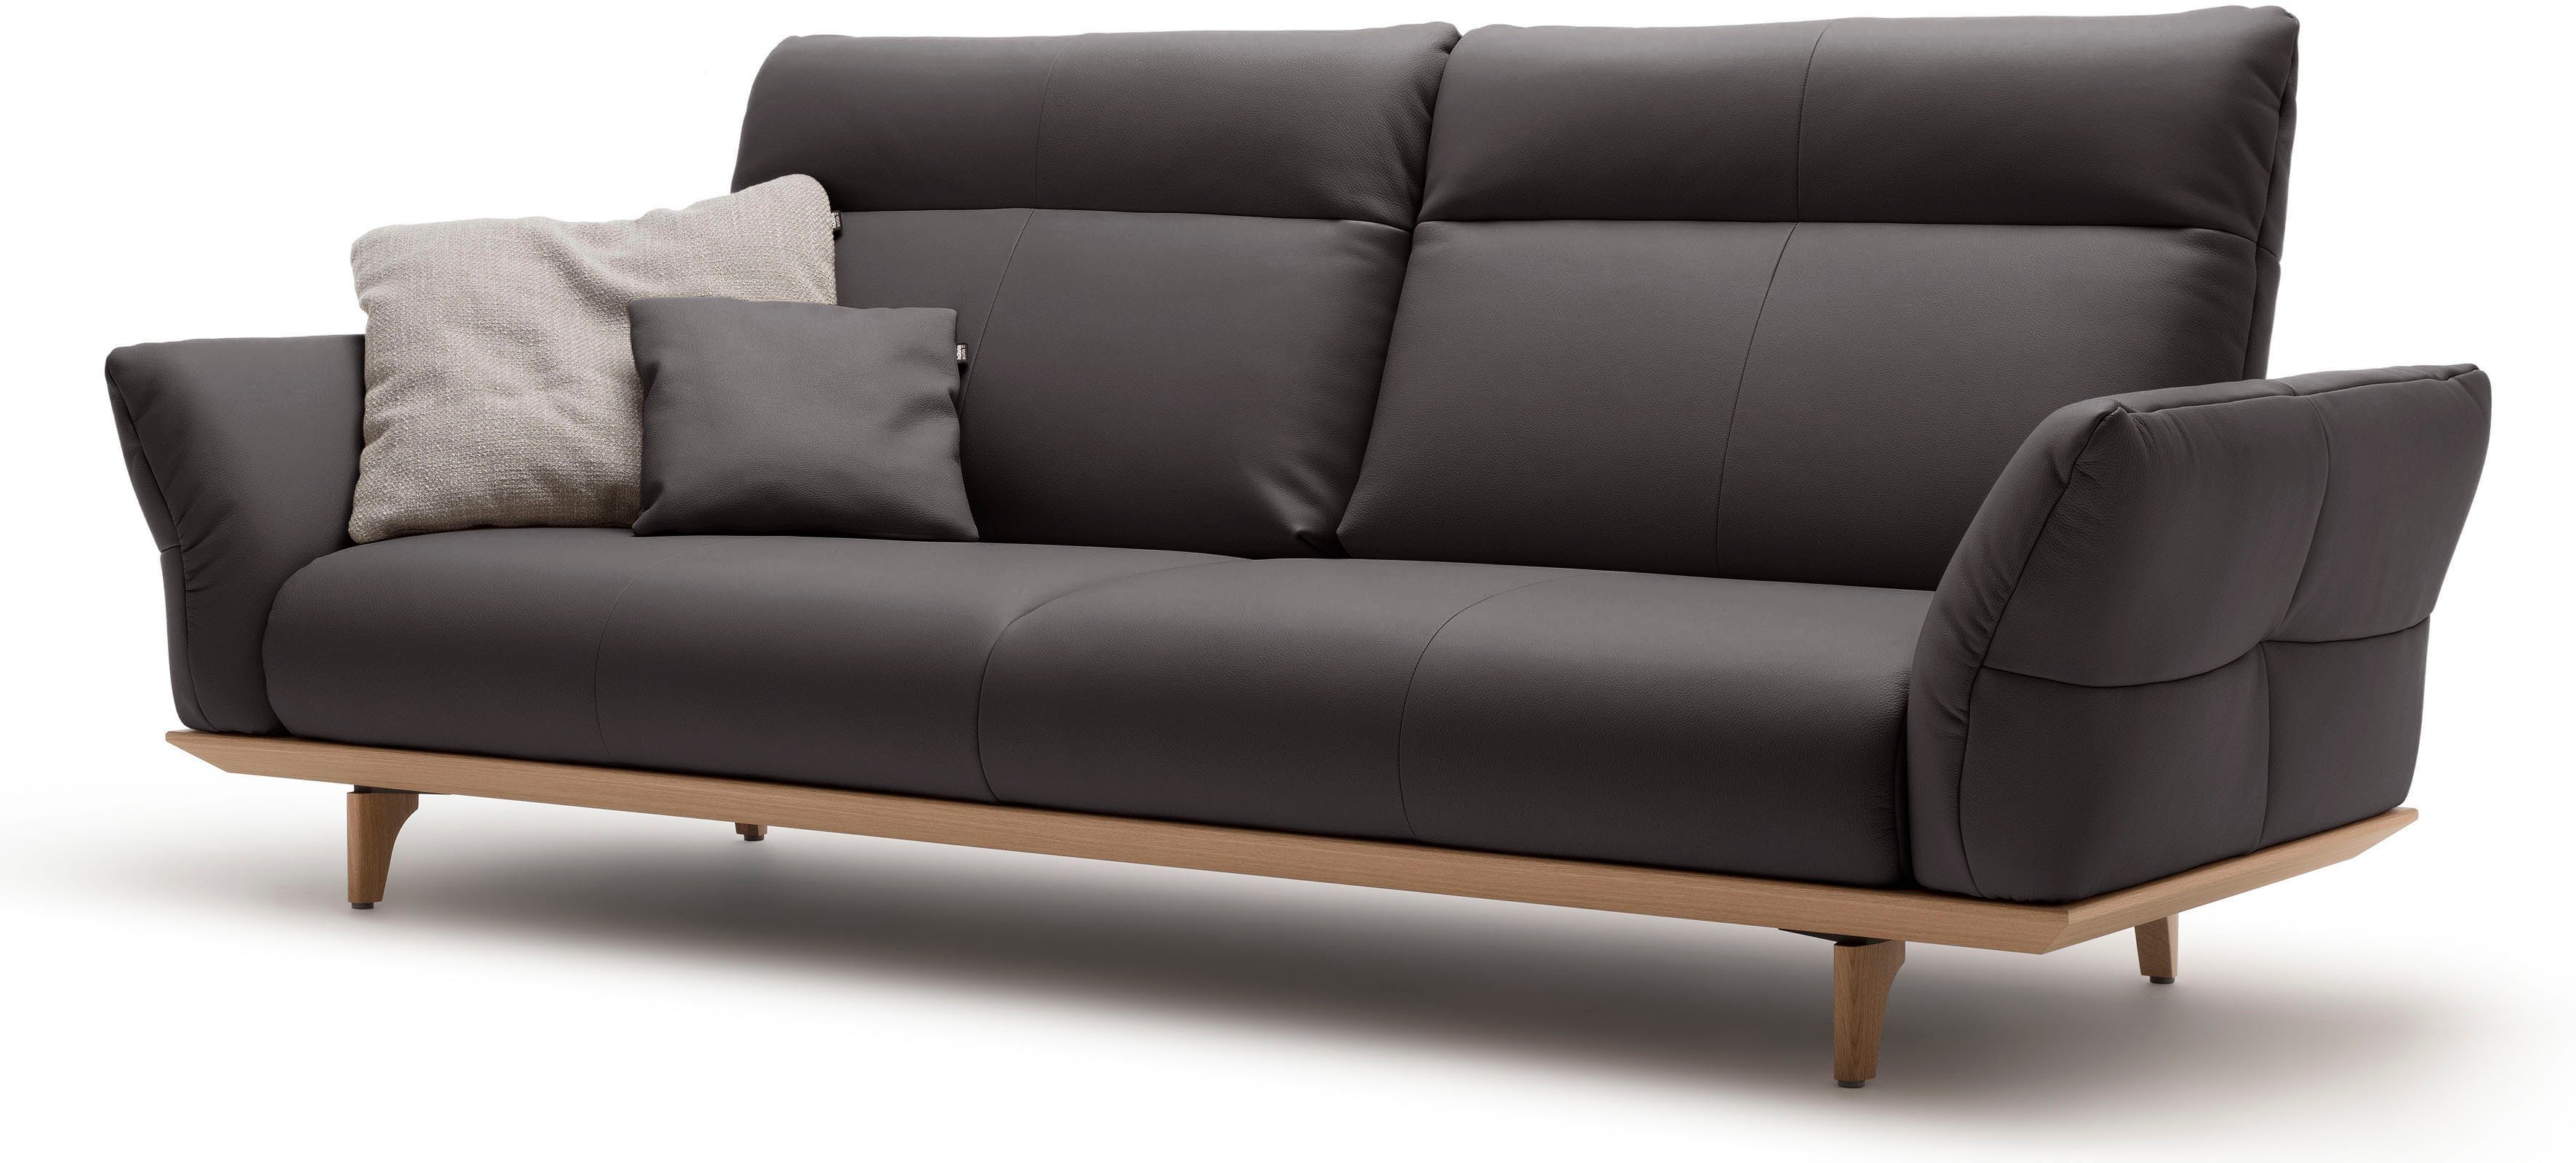 3,5-Sitzer Eiche Breite Füße sofa 228 cm hs.460, Sockel natur, hülsta Eiche, in